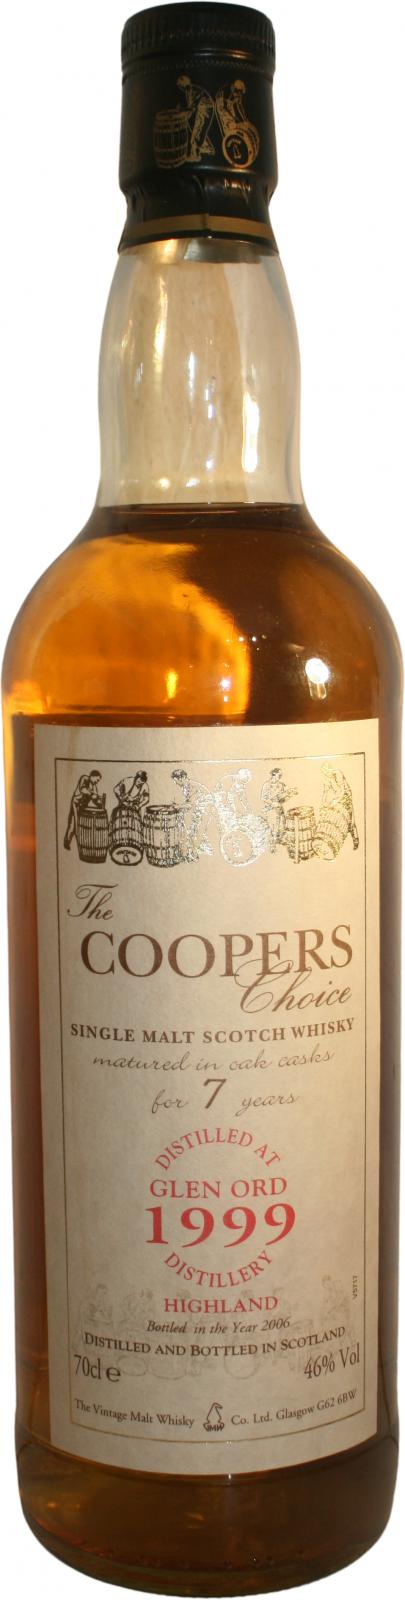 Glen Ord 1999 VM The Coopers choise Oak Cask 46% 700ml